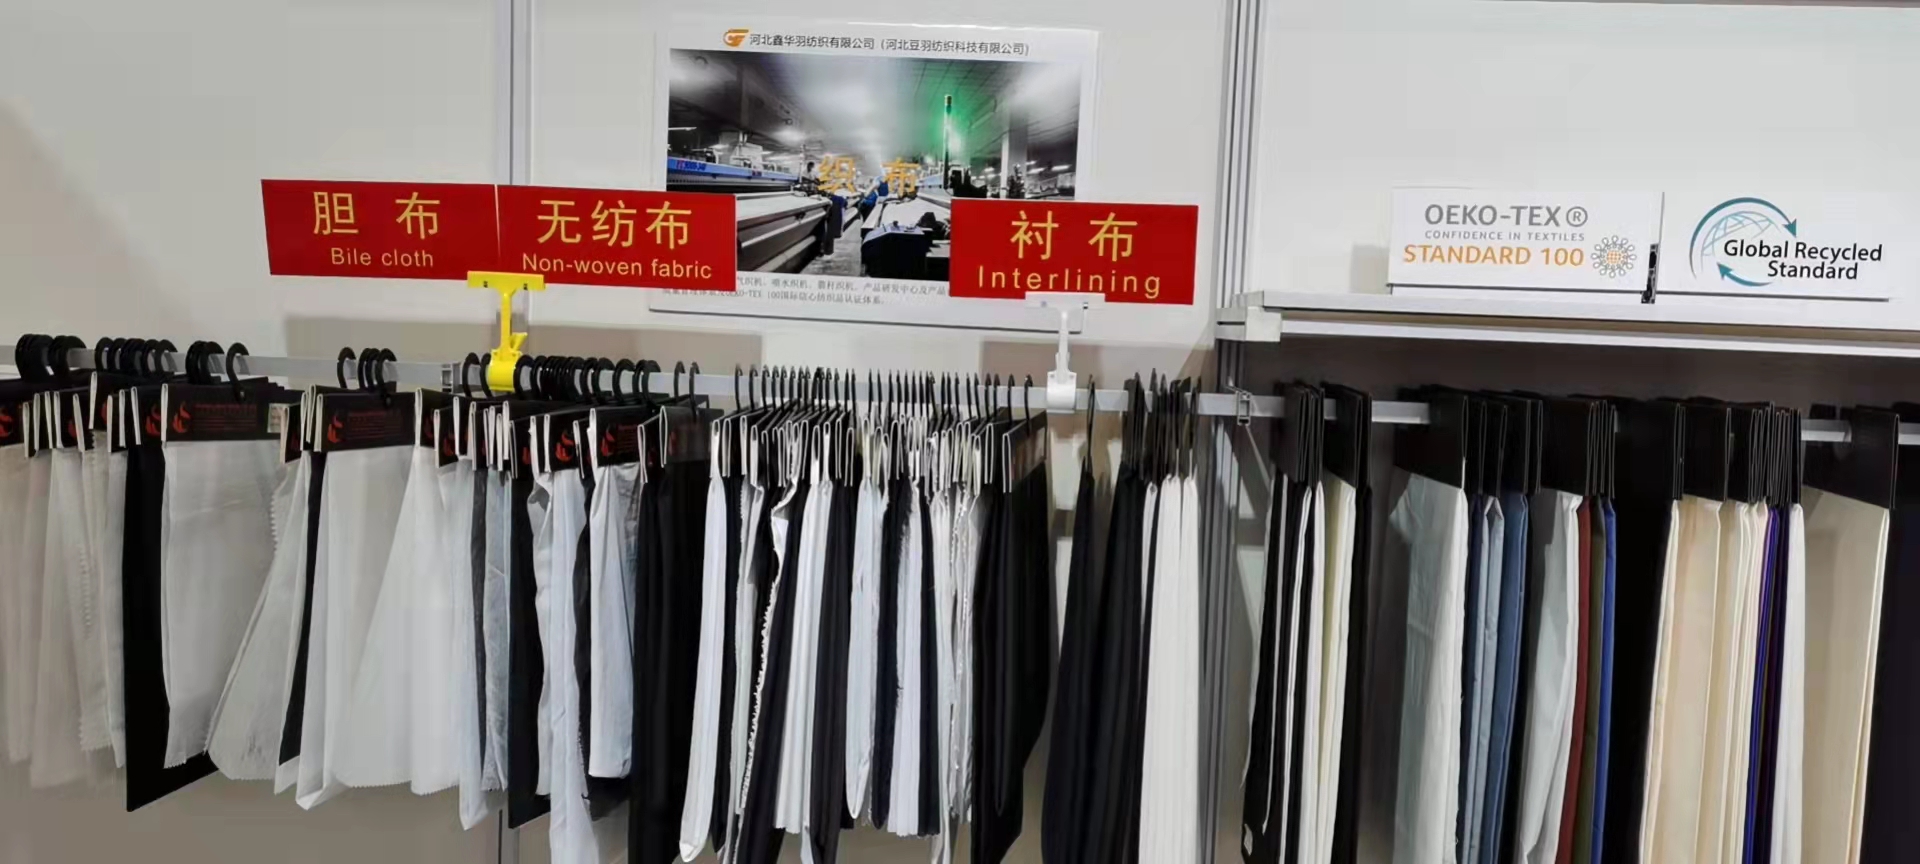 2021.10.9-11 Shanghai Intertextile Fair for garment accessories